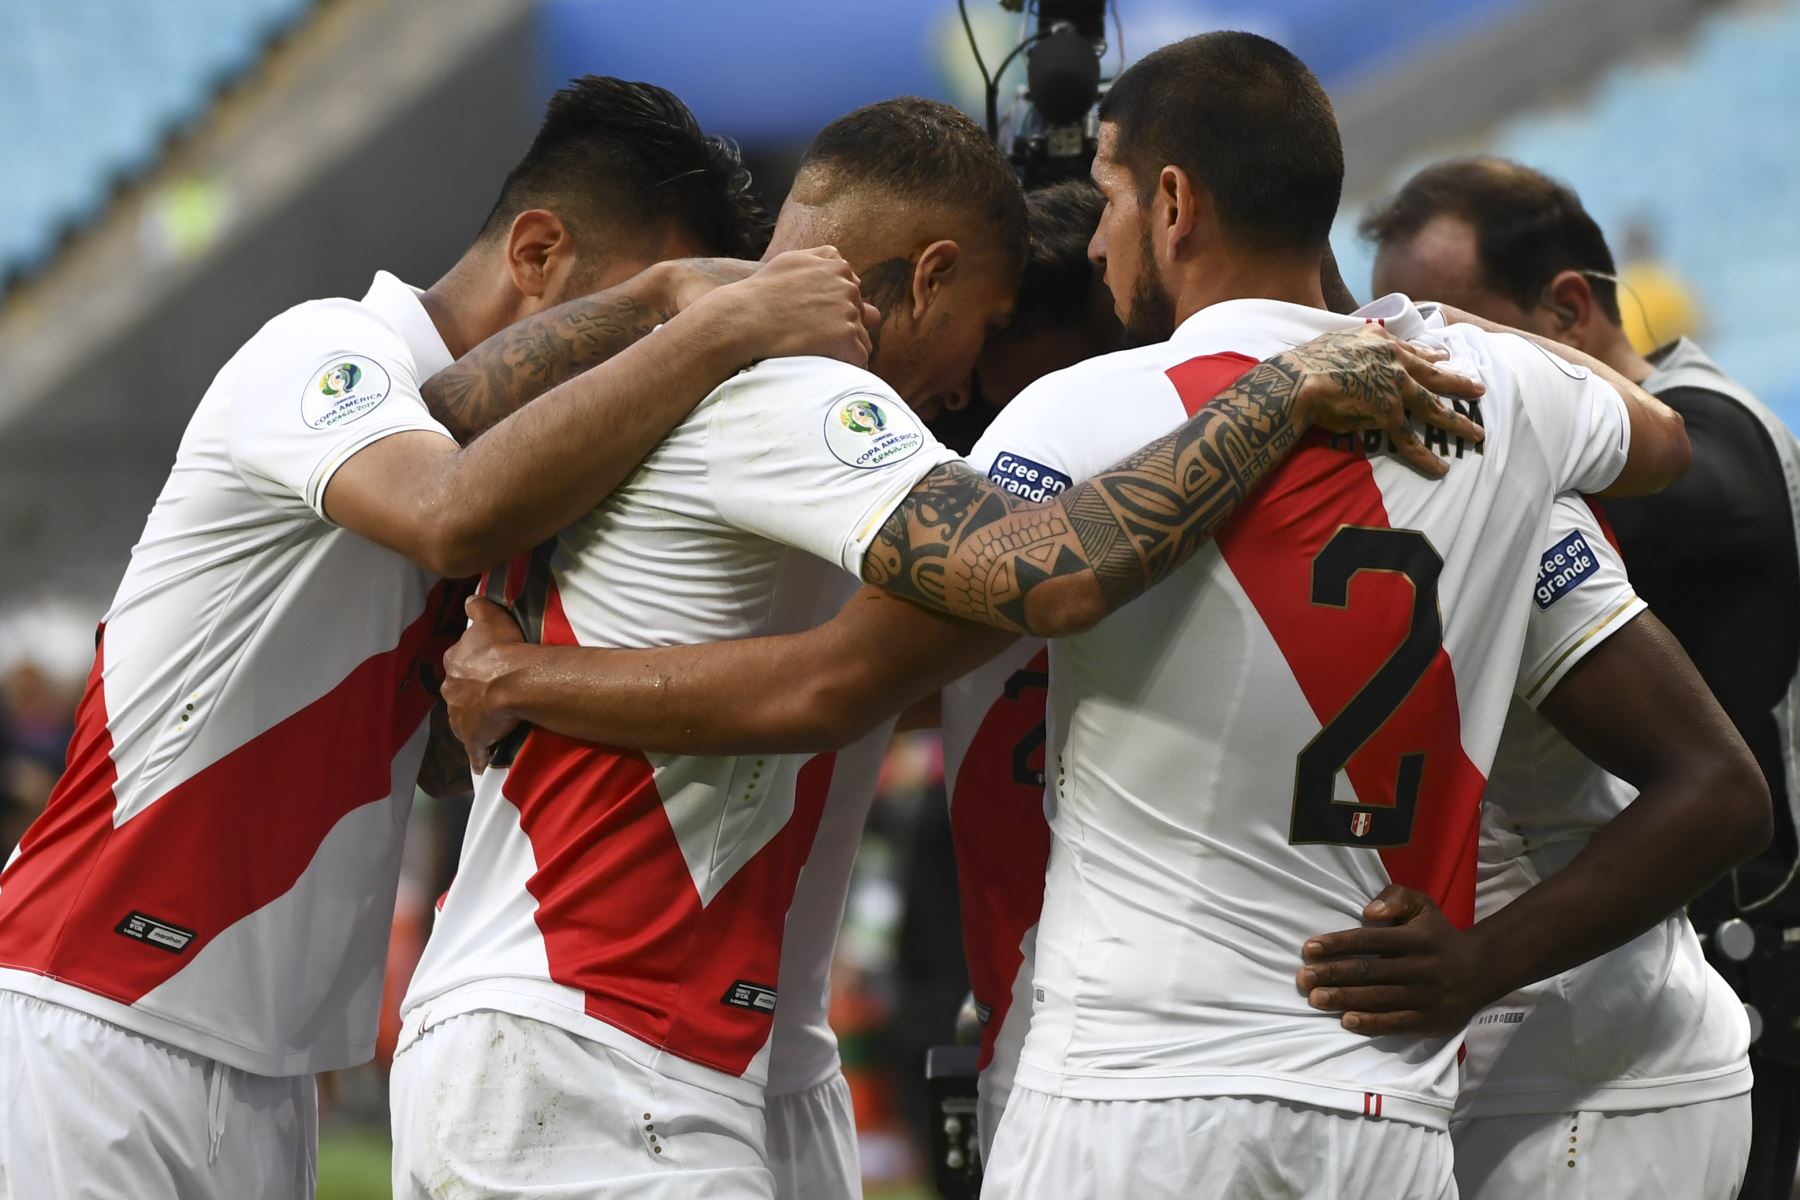 Los jugadores de Perú se abrazan en el partido  contra Venezuela en el torneo de fútbol de la Copa América en Brasil.
Foto:AFP